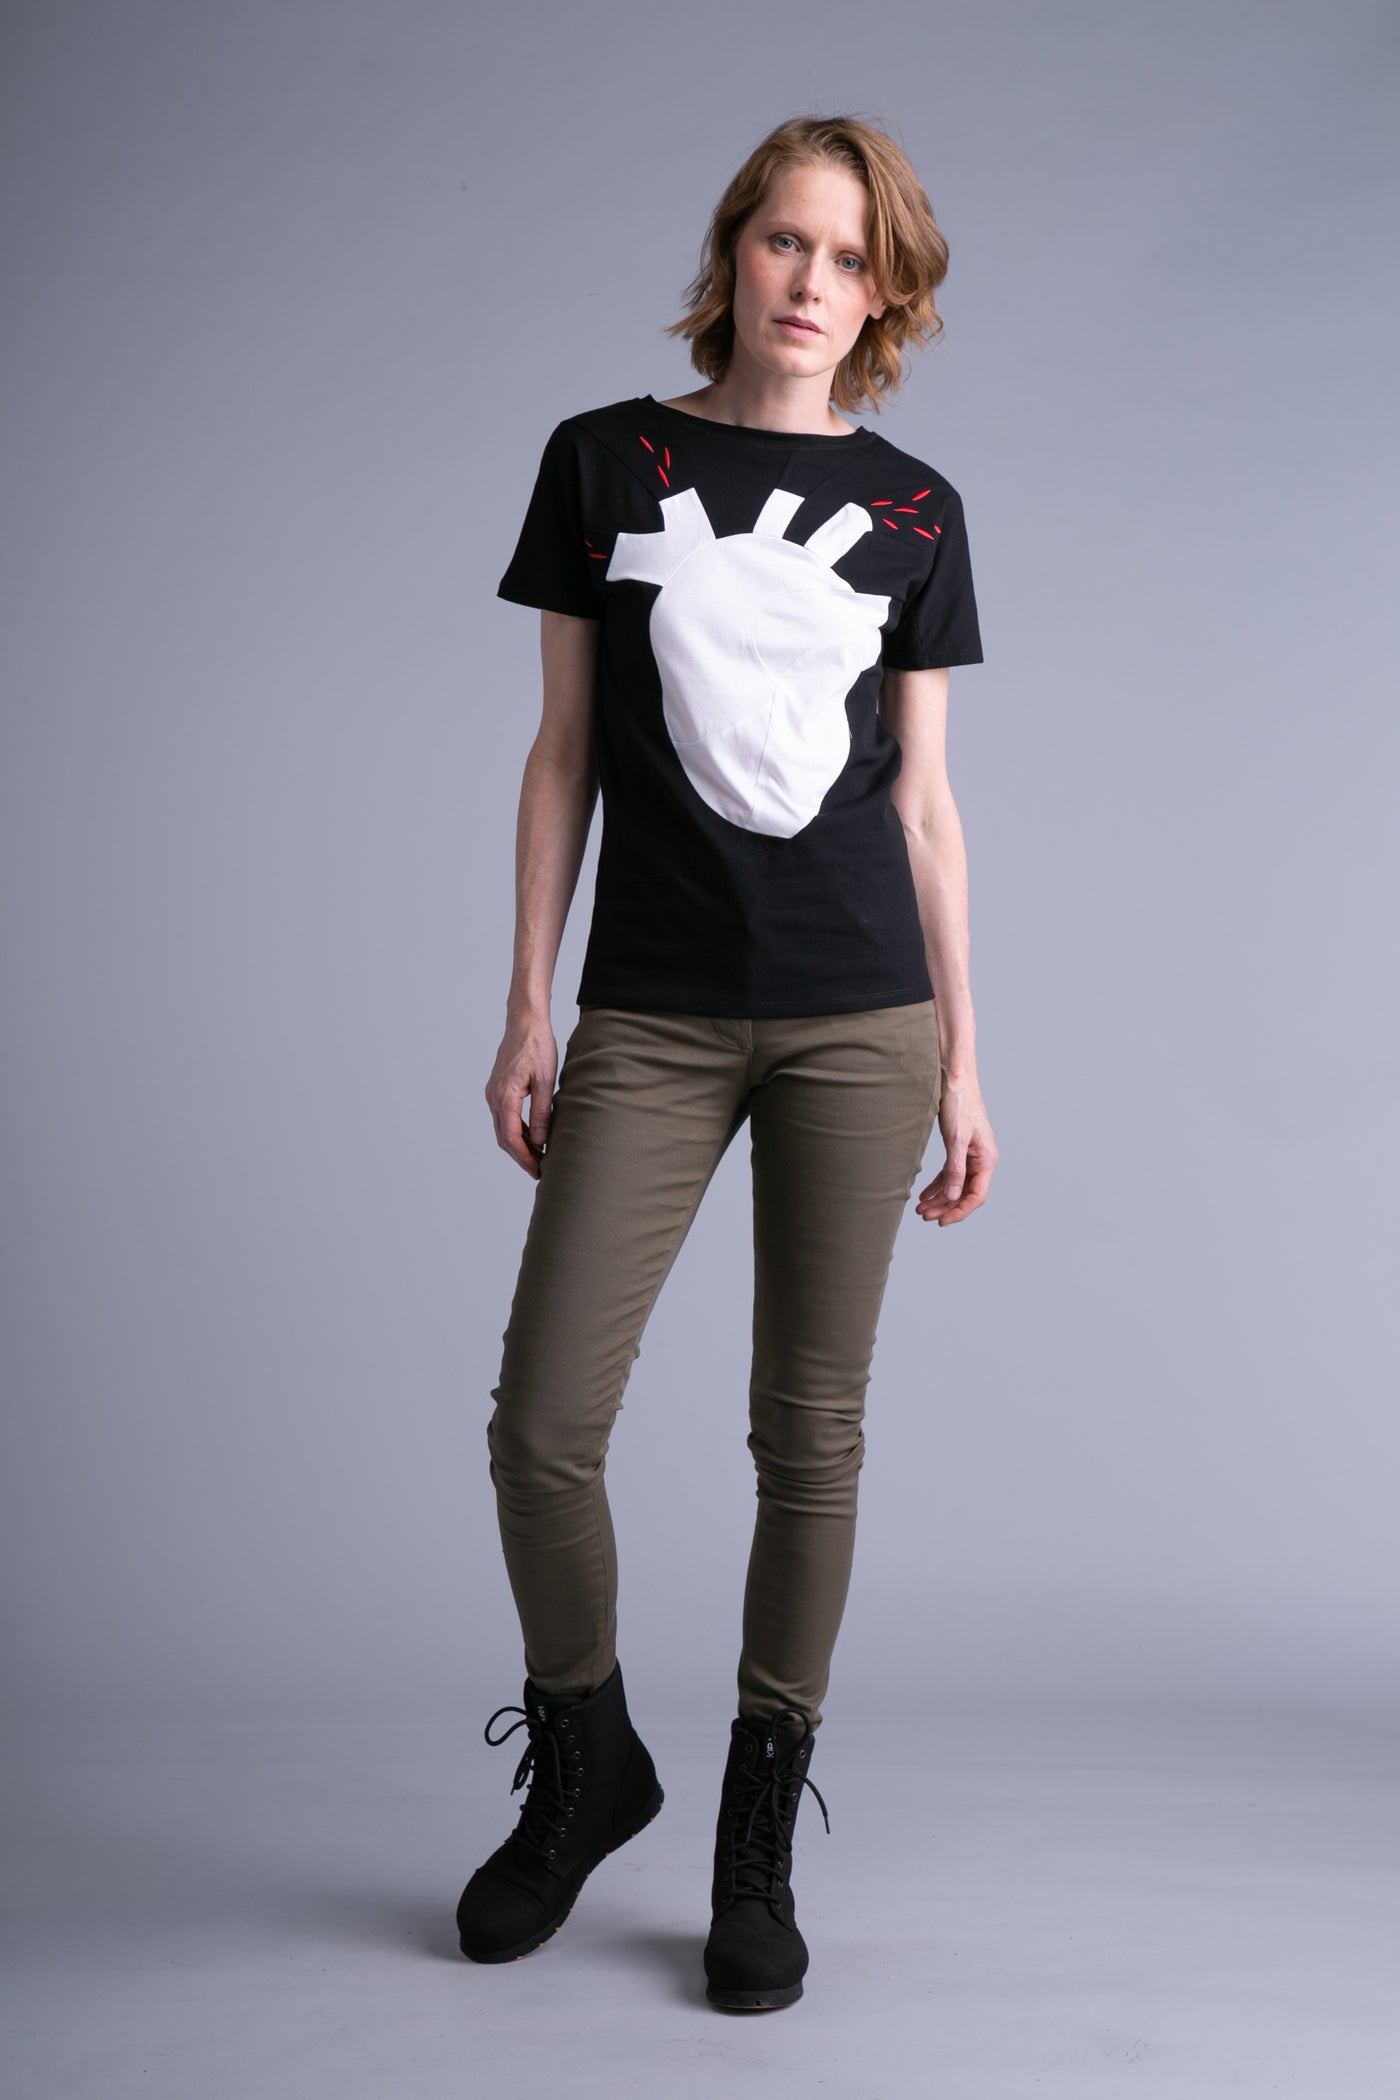 Up-shirt for women & men set, heart motif | Black, white